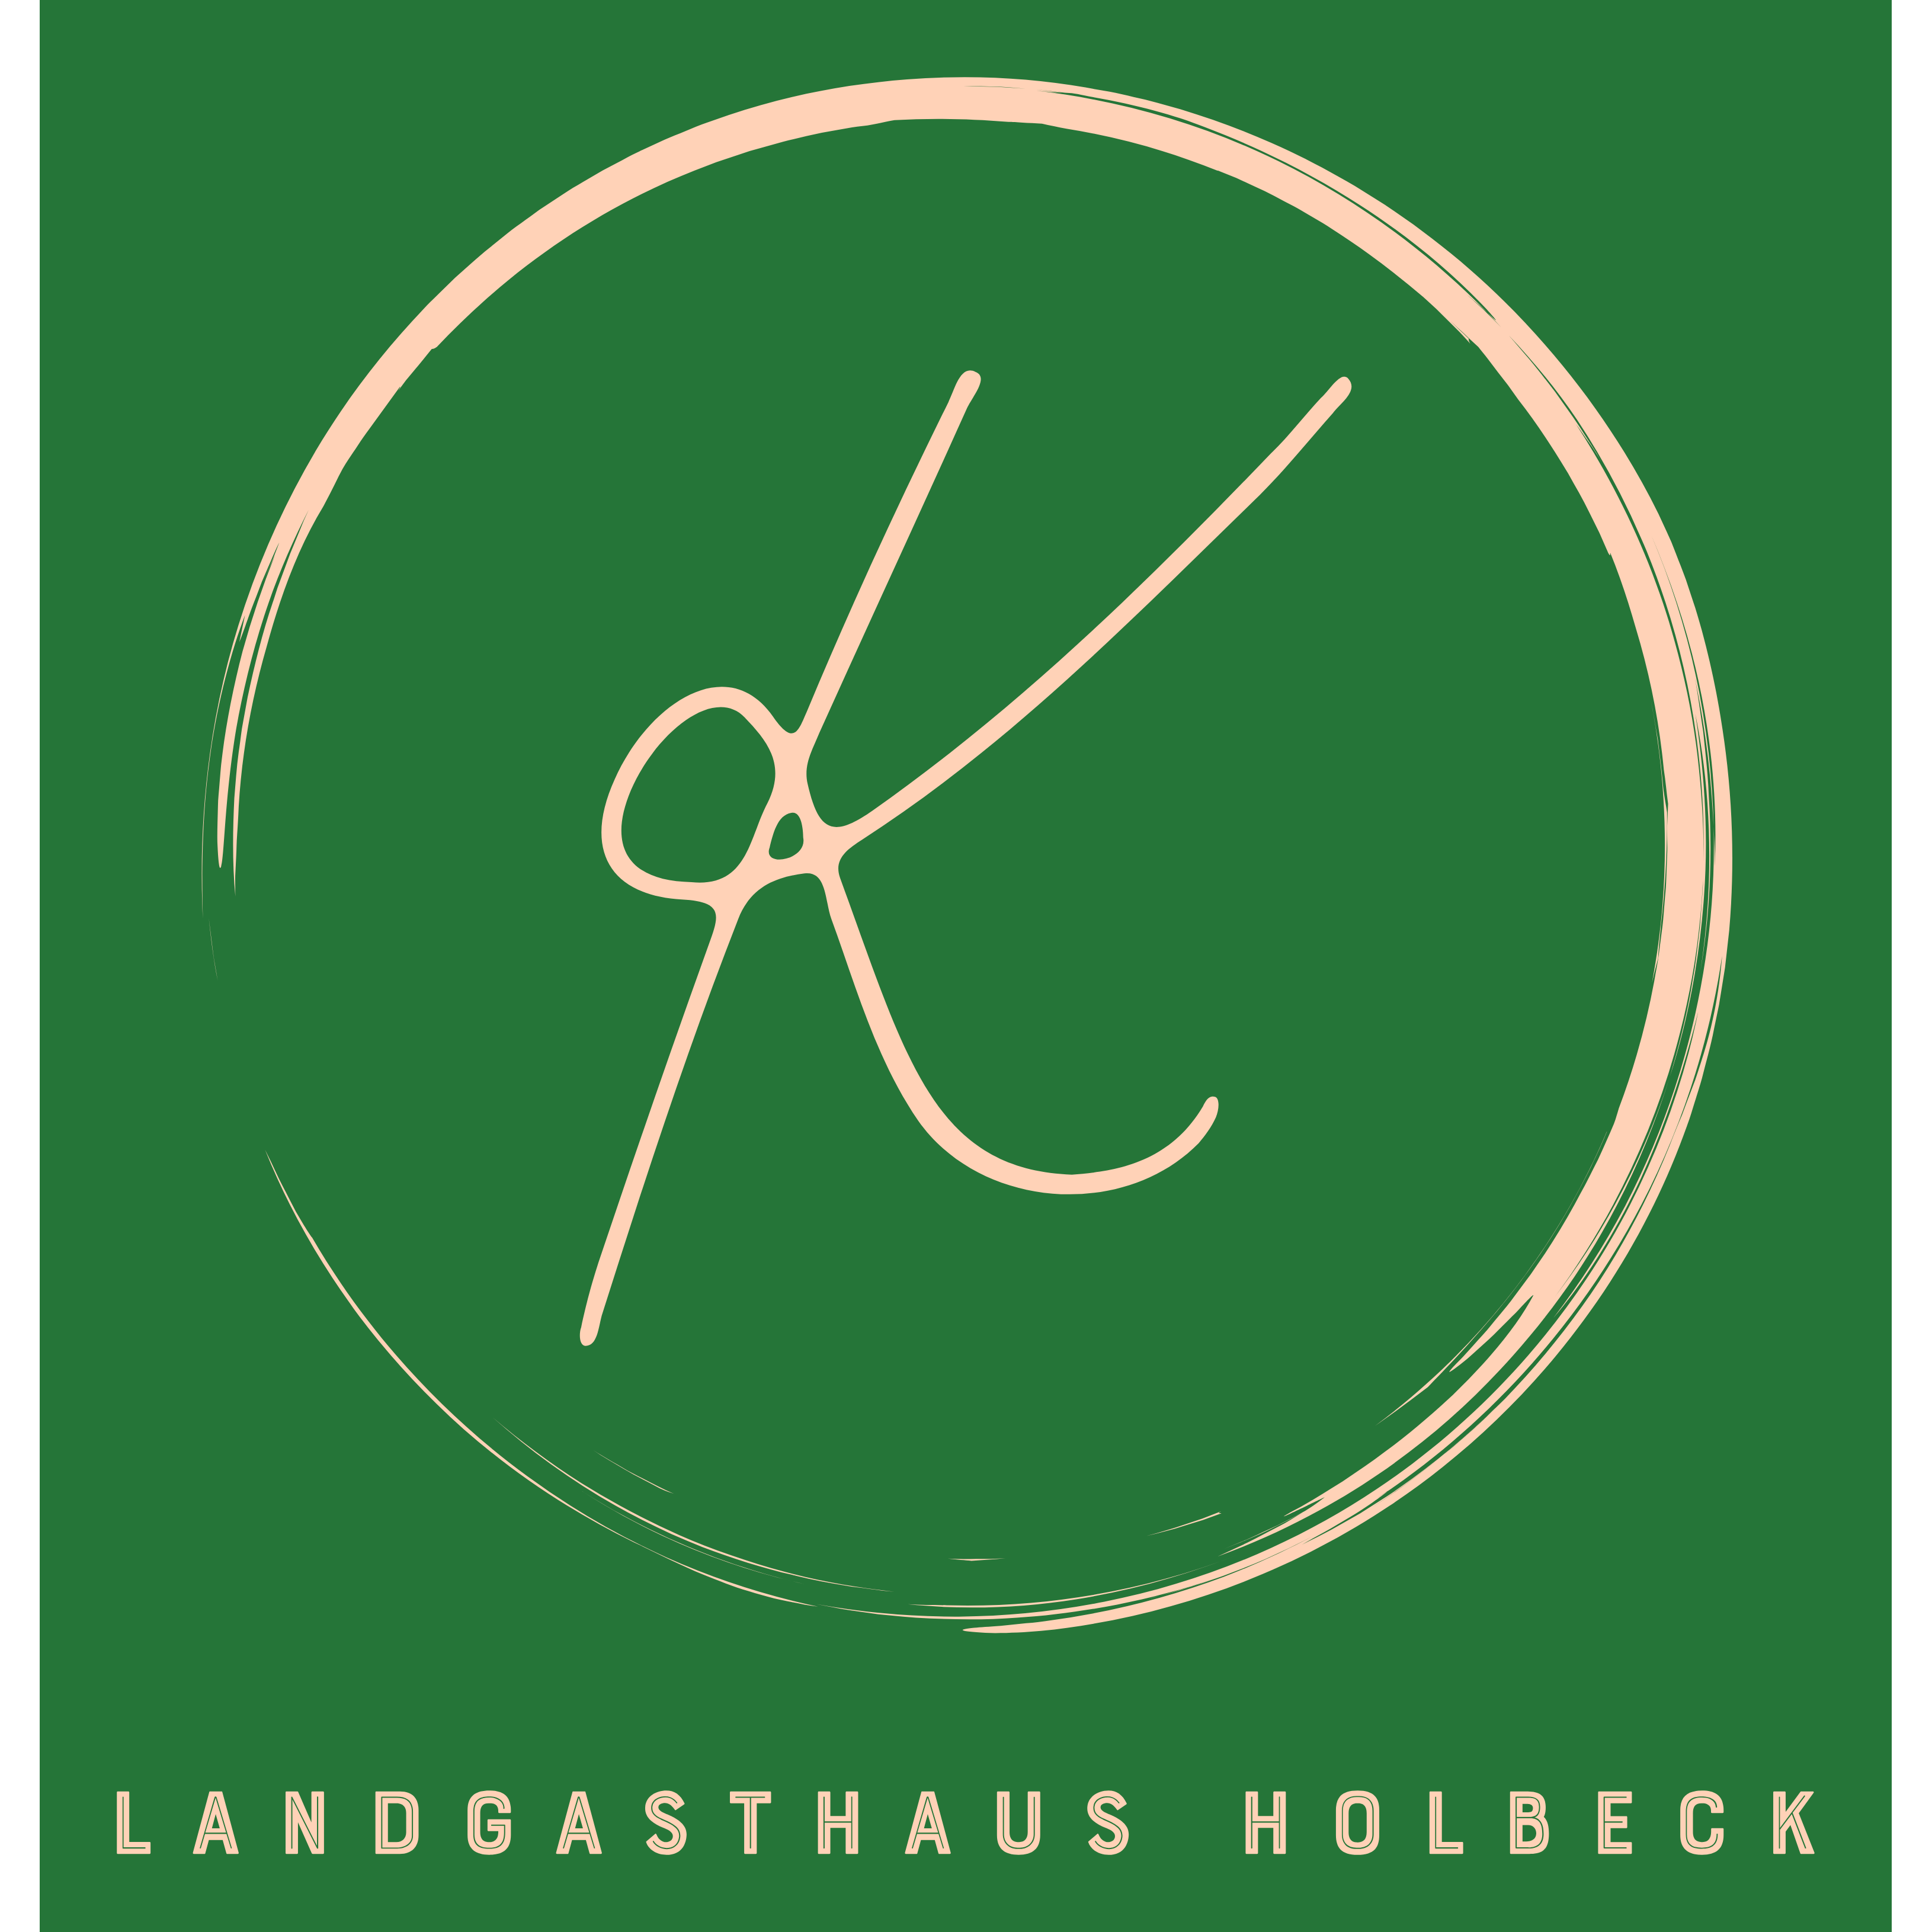 Landgasthaus Holbeck "Zu den Eichen" in Nuthe Urstromtal - Logo